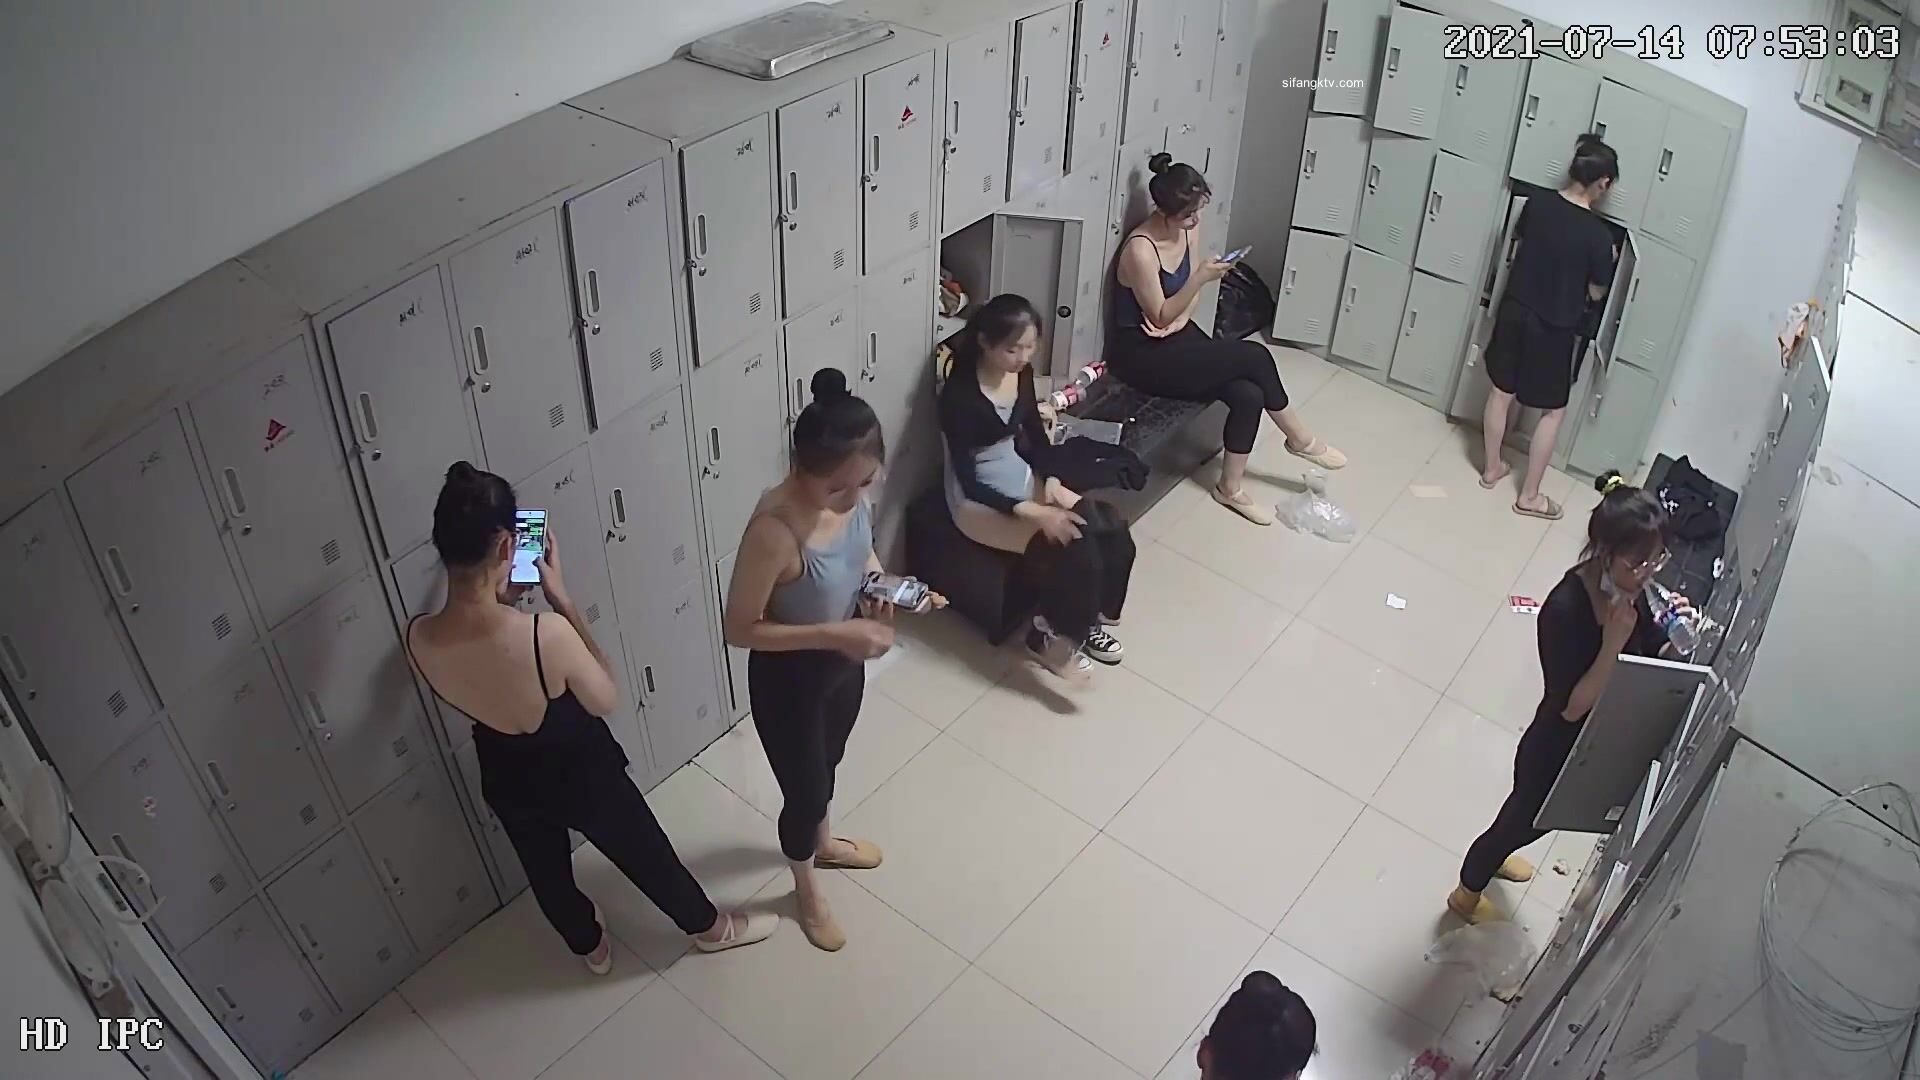 破解摄像头 艺校舞蹈班更衣室 一群暑假学舞蹈的学生妹 - SOPORN.COM